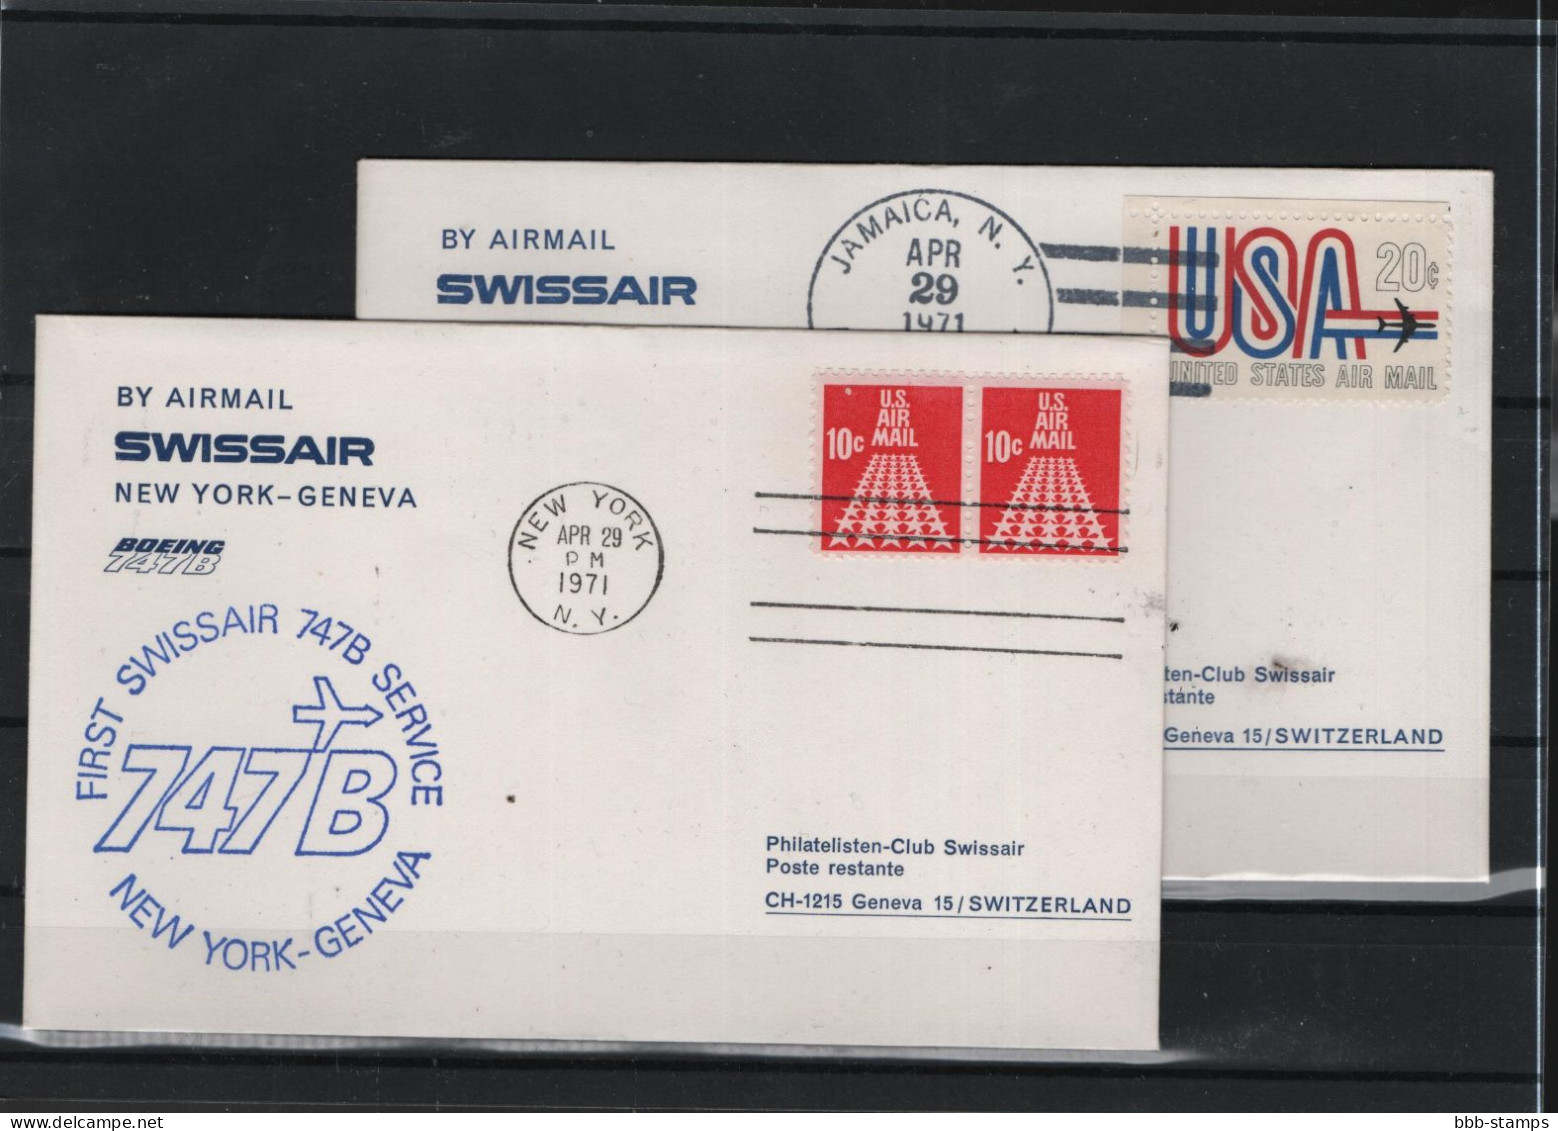 Schweiz Luftpost FFC Swissair 29.4.1971 New York - Genf - First Flight Covers